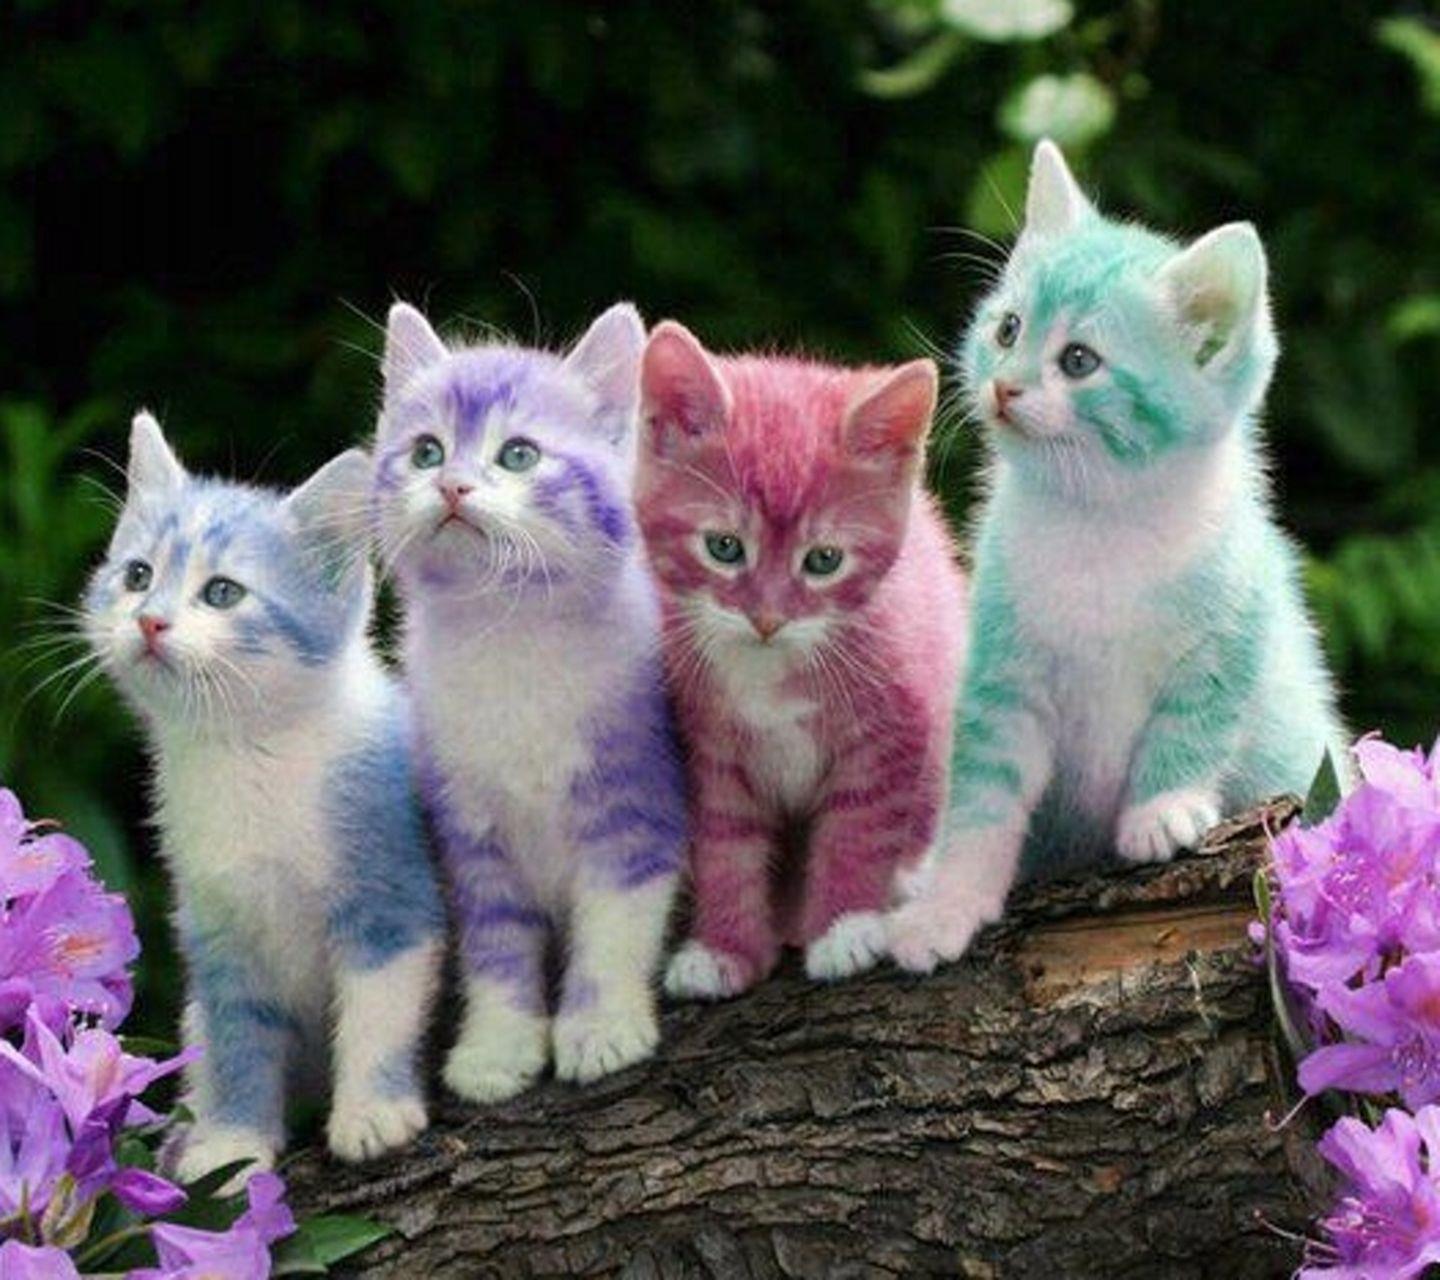 Dei simpatici gattini colorati - Sfondi per Android, i più belli da scaricare gratis